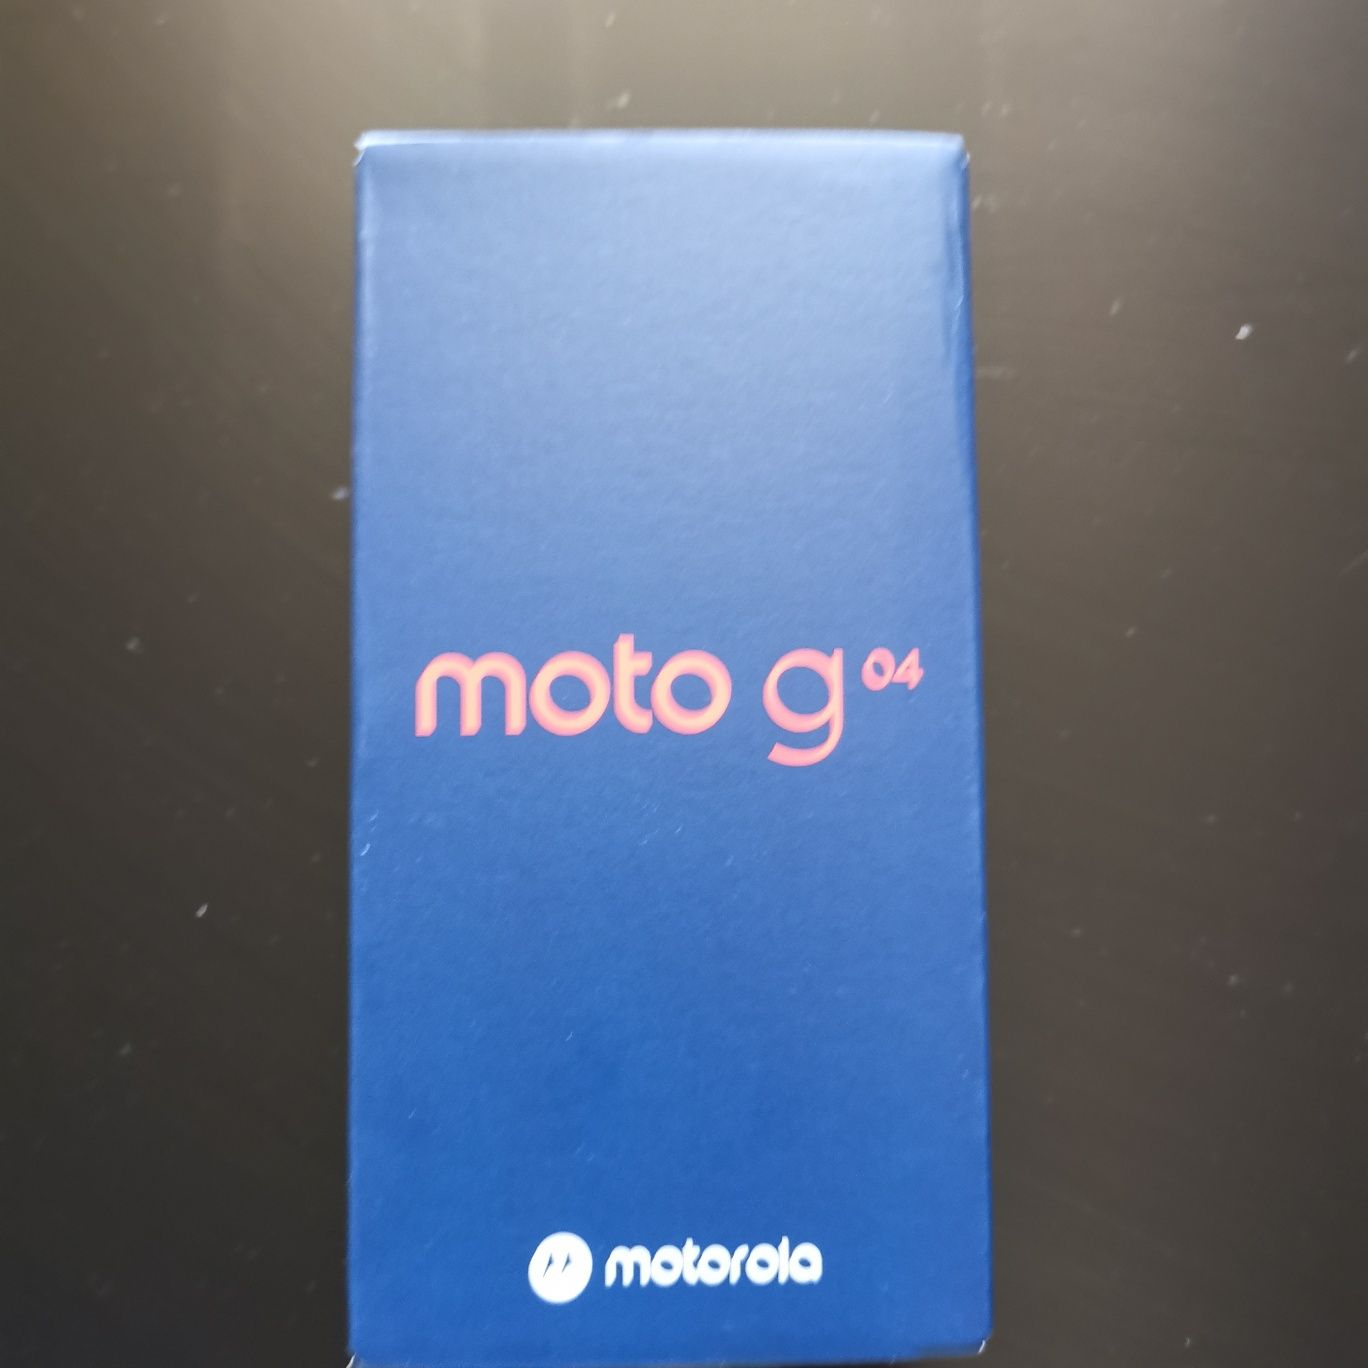 Motorola g04 нов